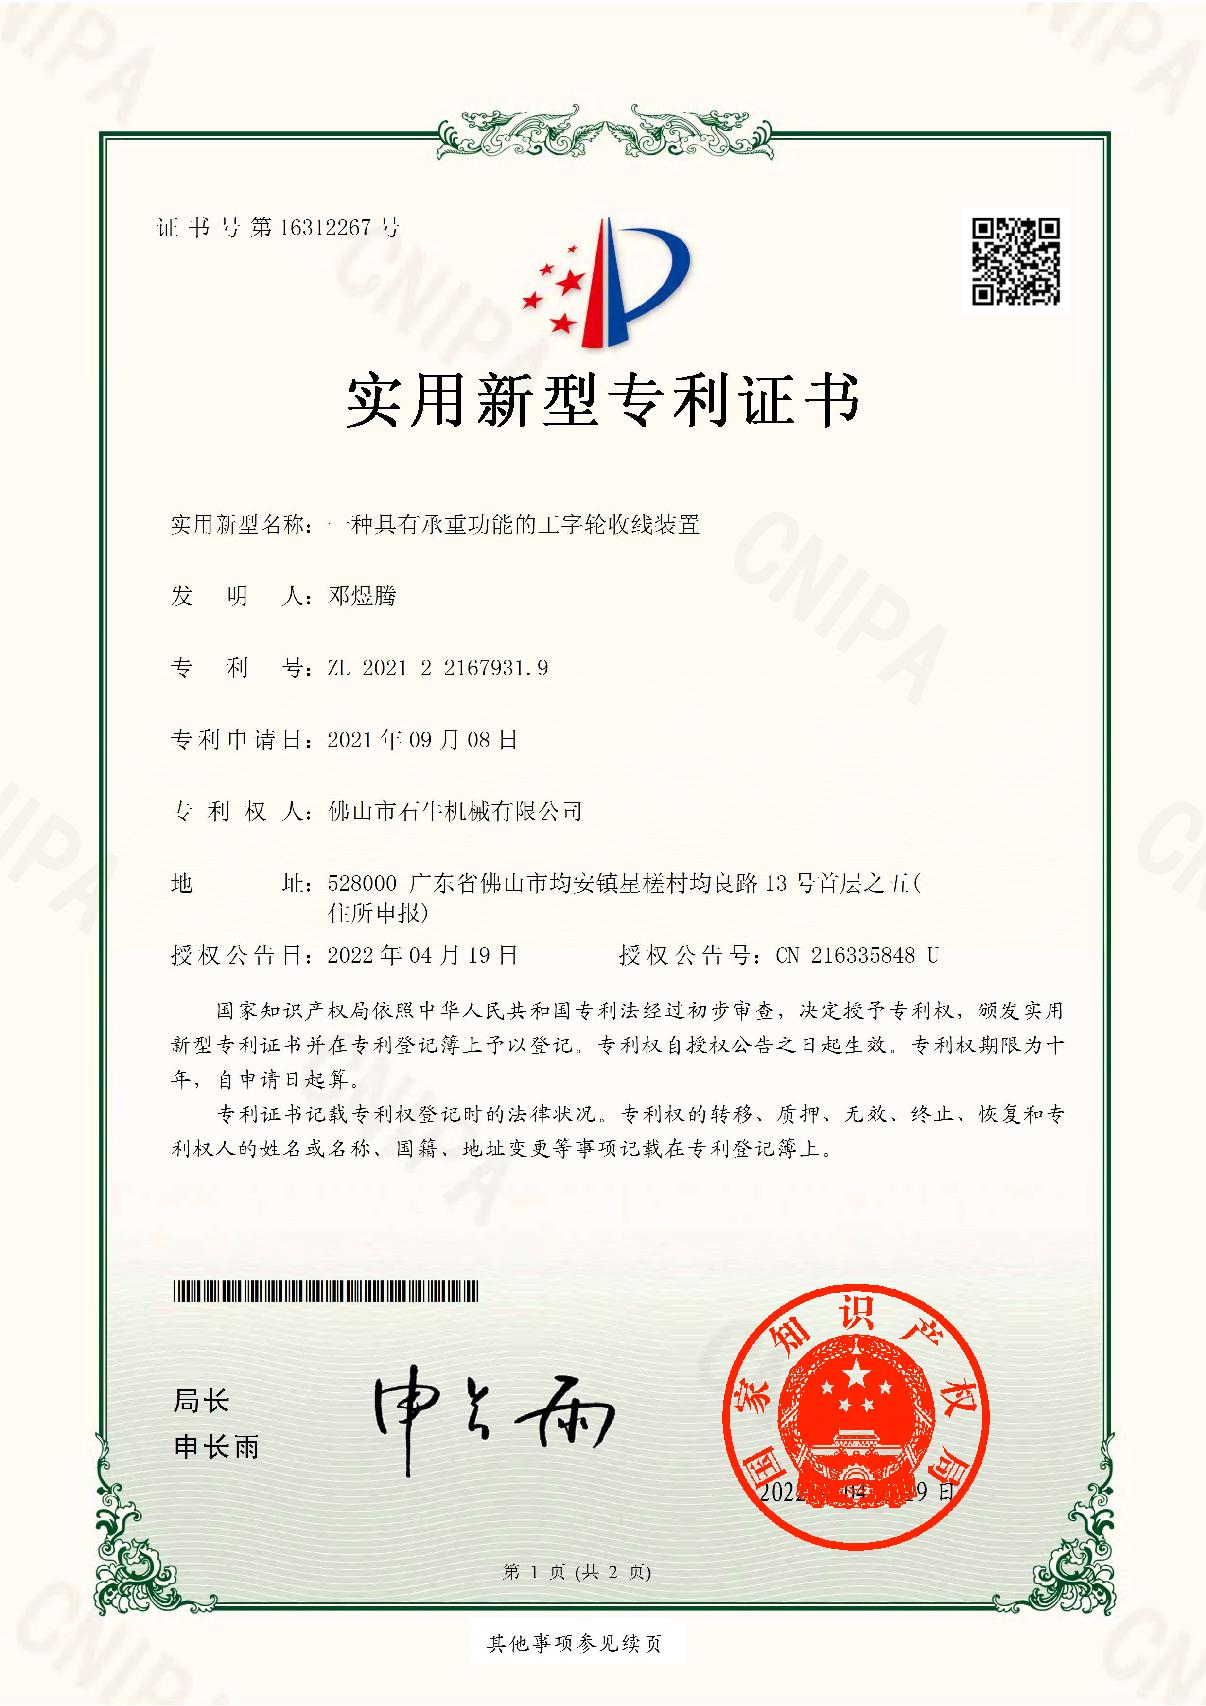 2021221679319-实用新型专利证书(签章)_1.JPG